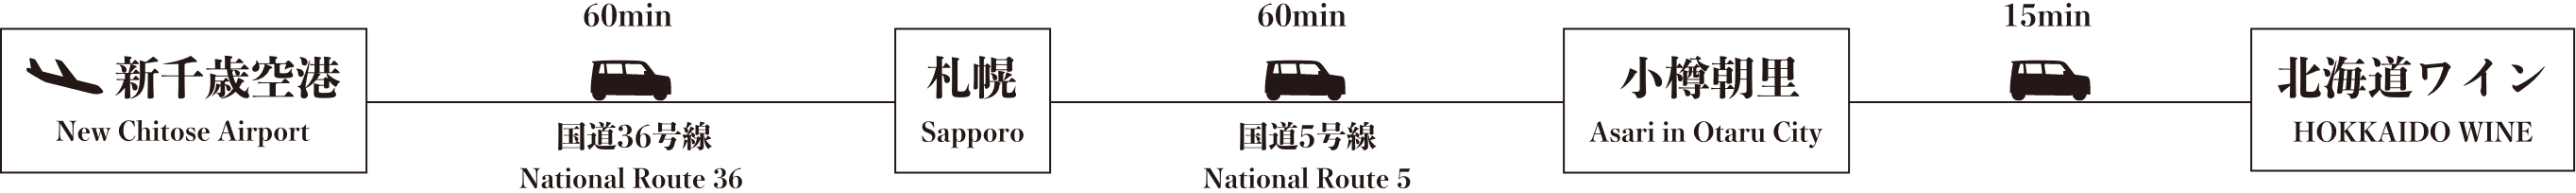 新千歳空港からマイカーご利用の場合、札幌〜小樽朝里経由にてお越しください。